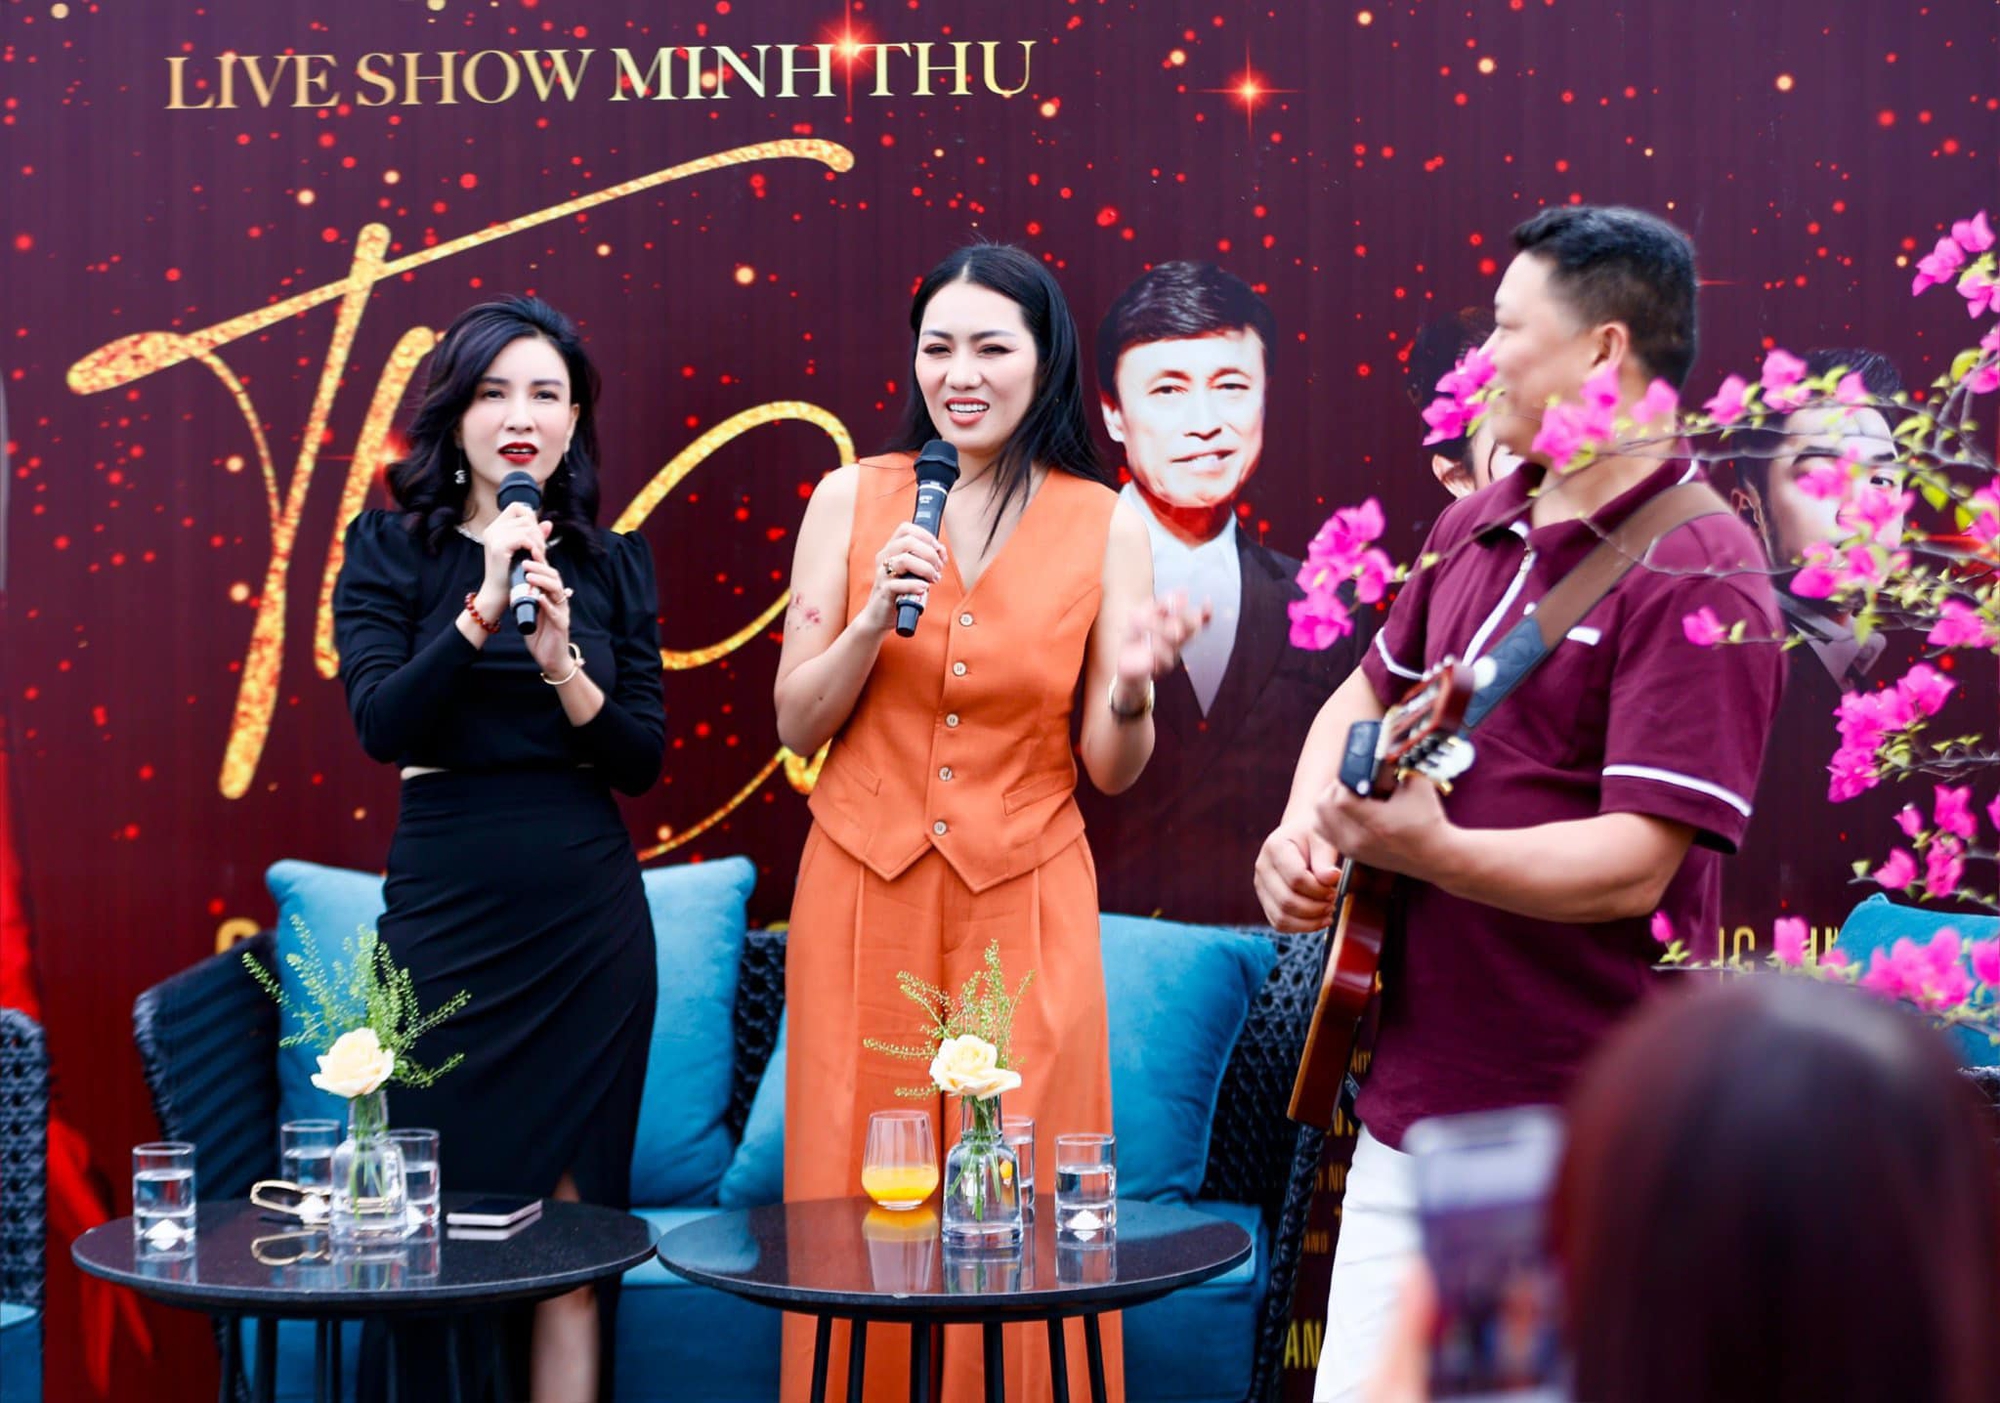 Ca sĩ Minh Thu nói rõ lí do bỏ tiền tỷ ra làm liveshow để mời Tuấn Ngọc về hát - Ảnh 3.